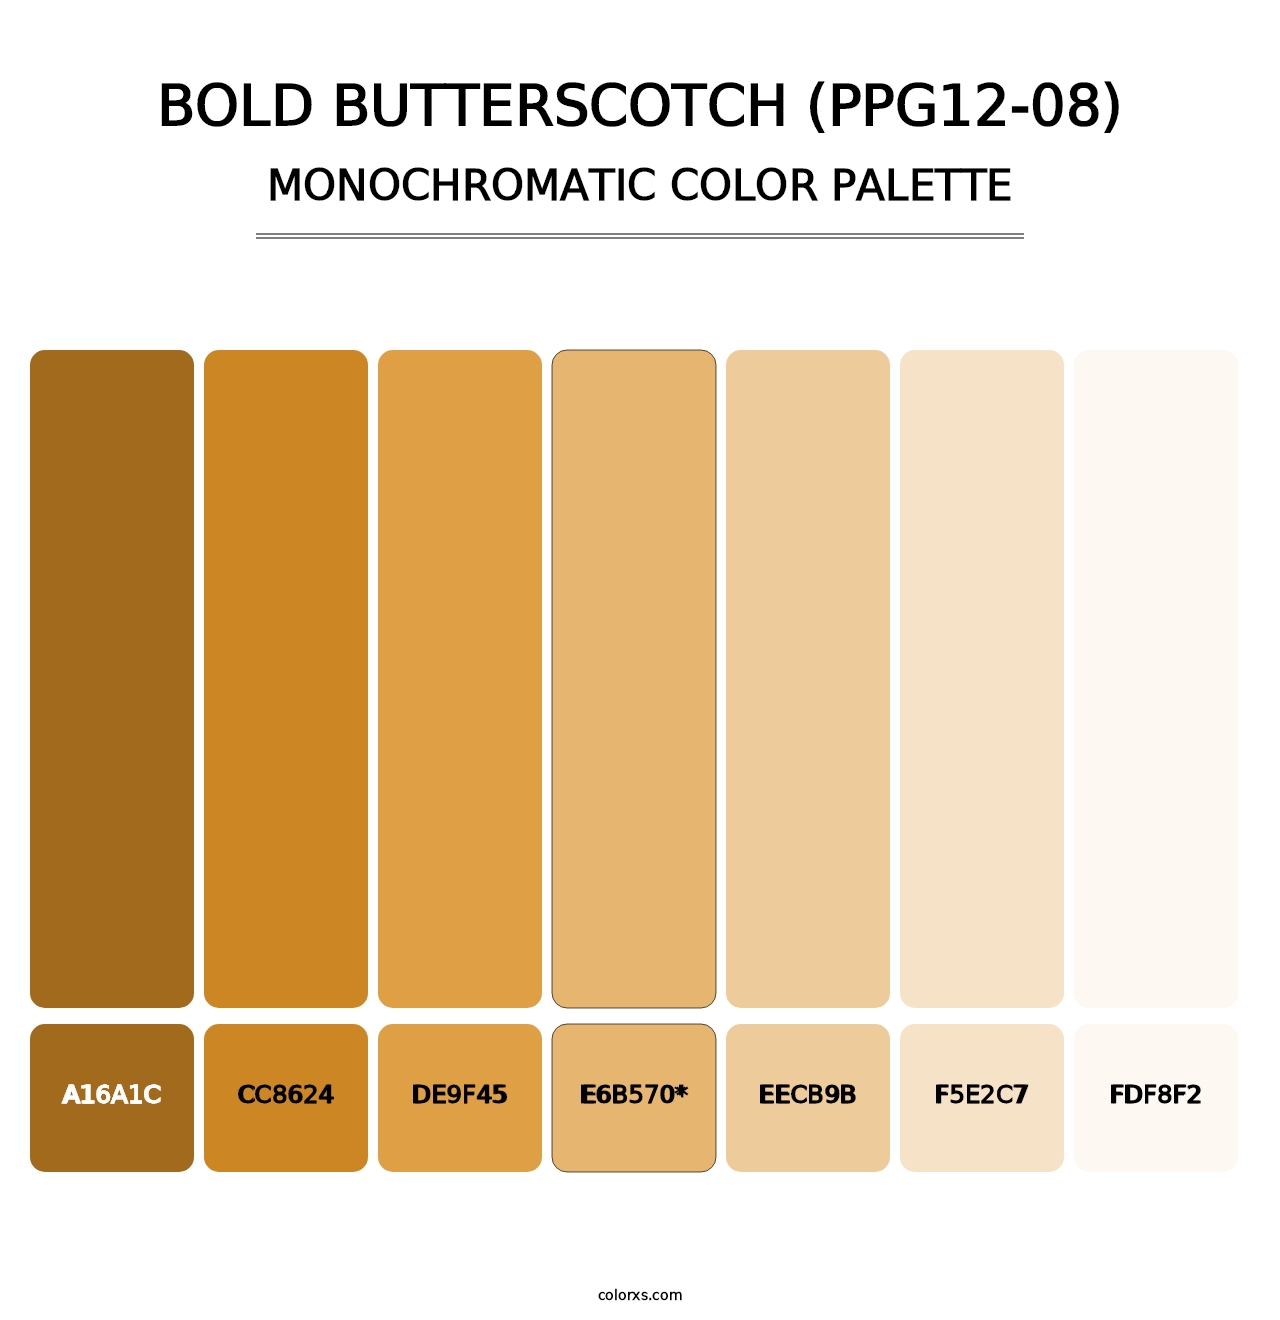 Bold Butterscotch (PPG12-08) - Monochromatic Color Palette